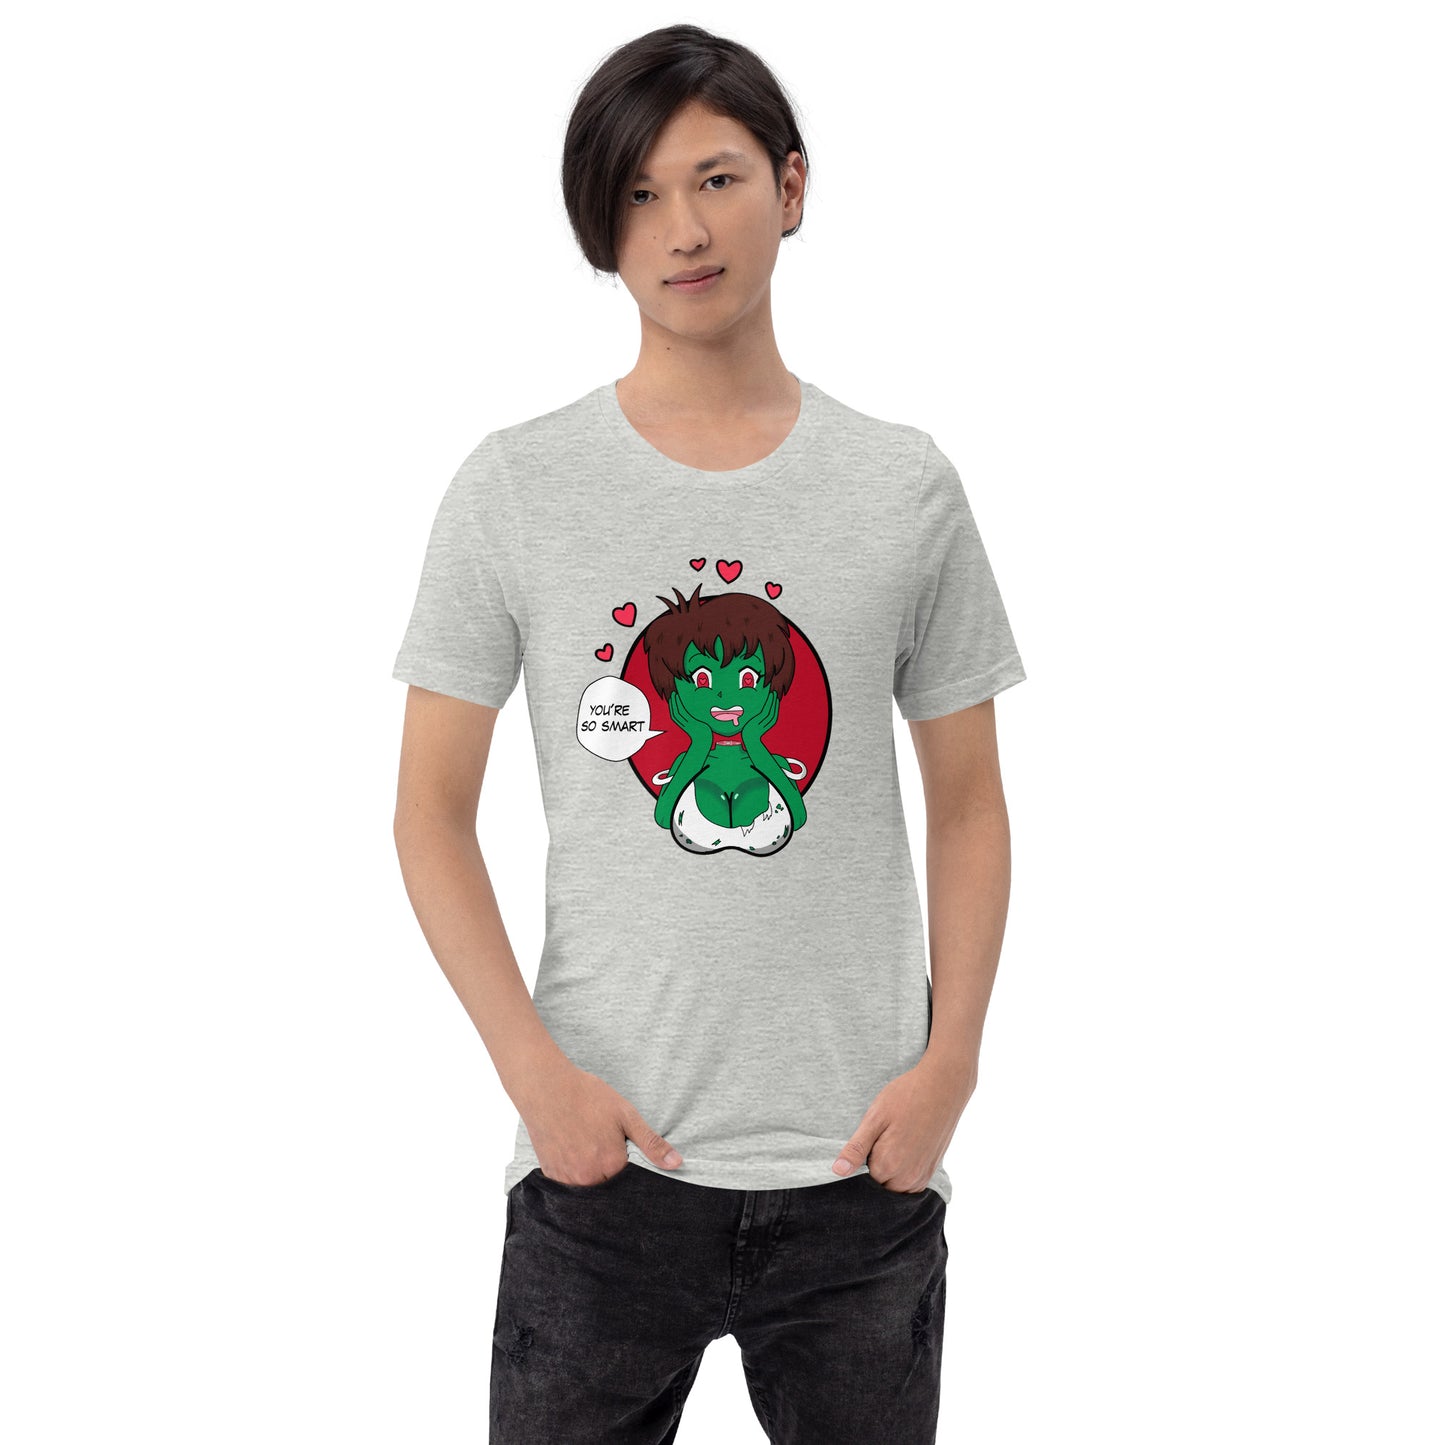 Unisext-shirt der Zombie-Mädchen-Liebe-Gehirne